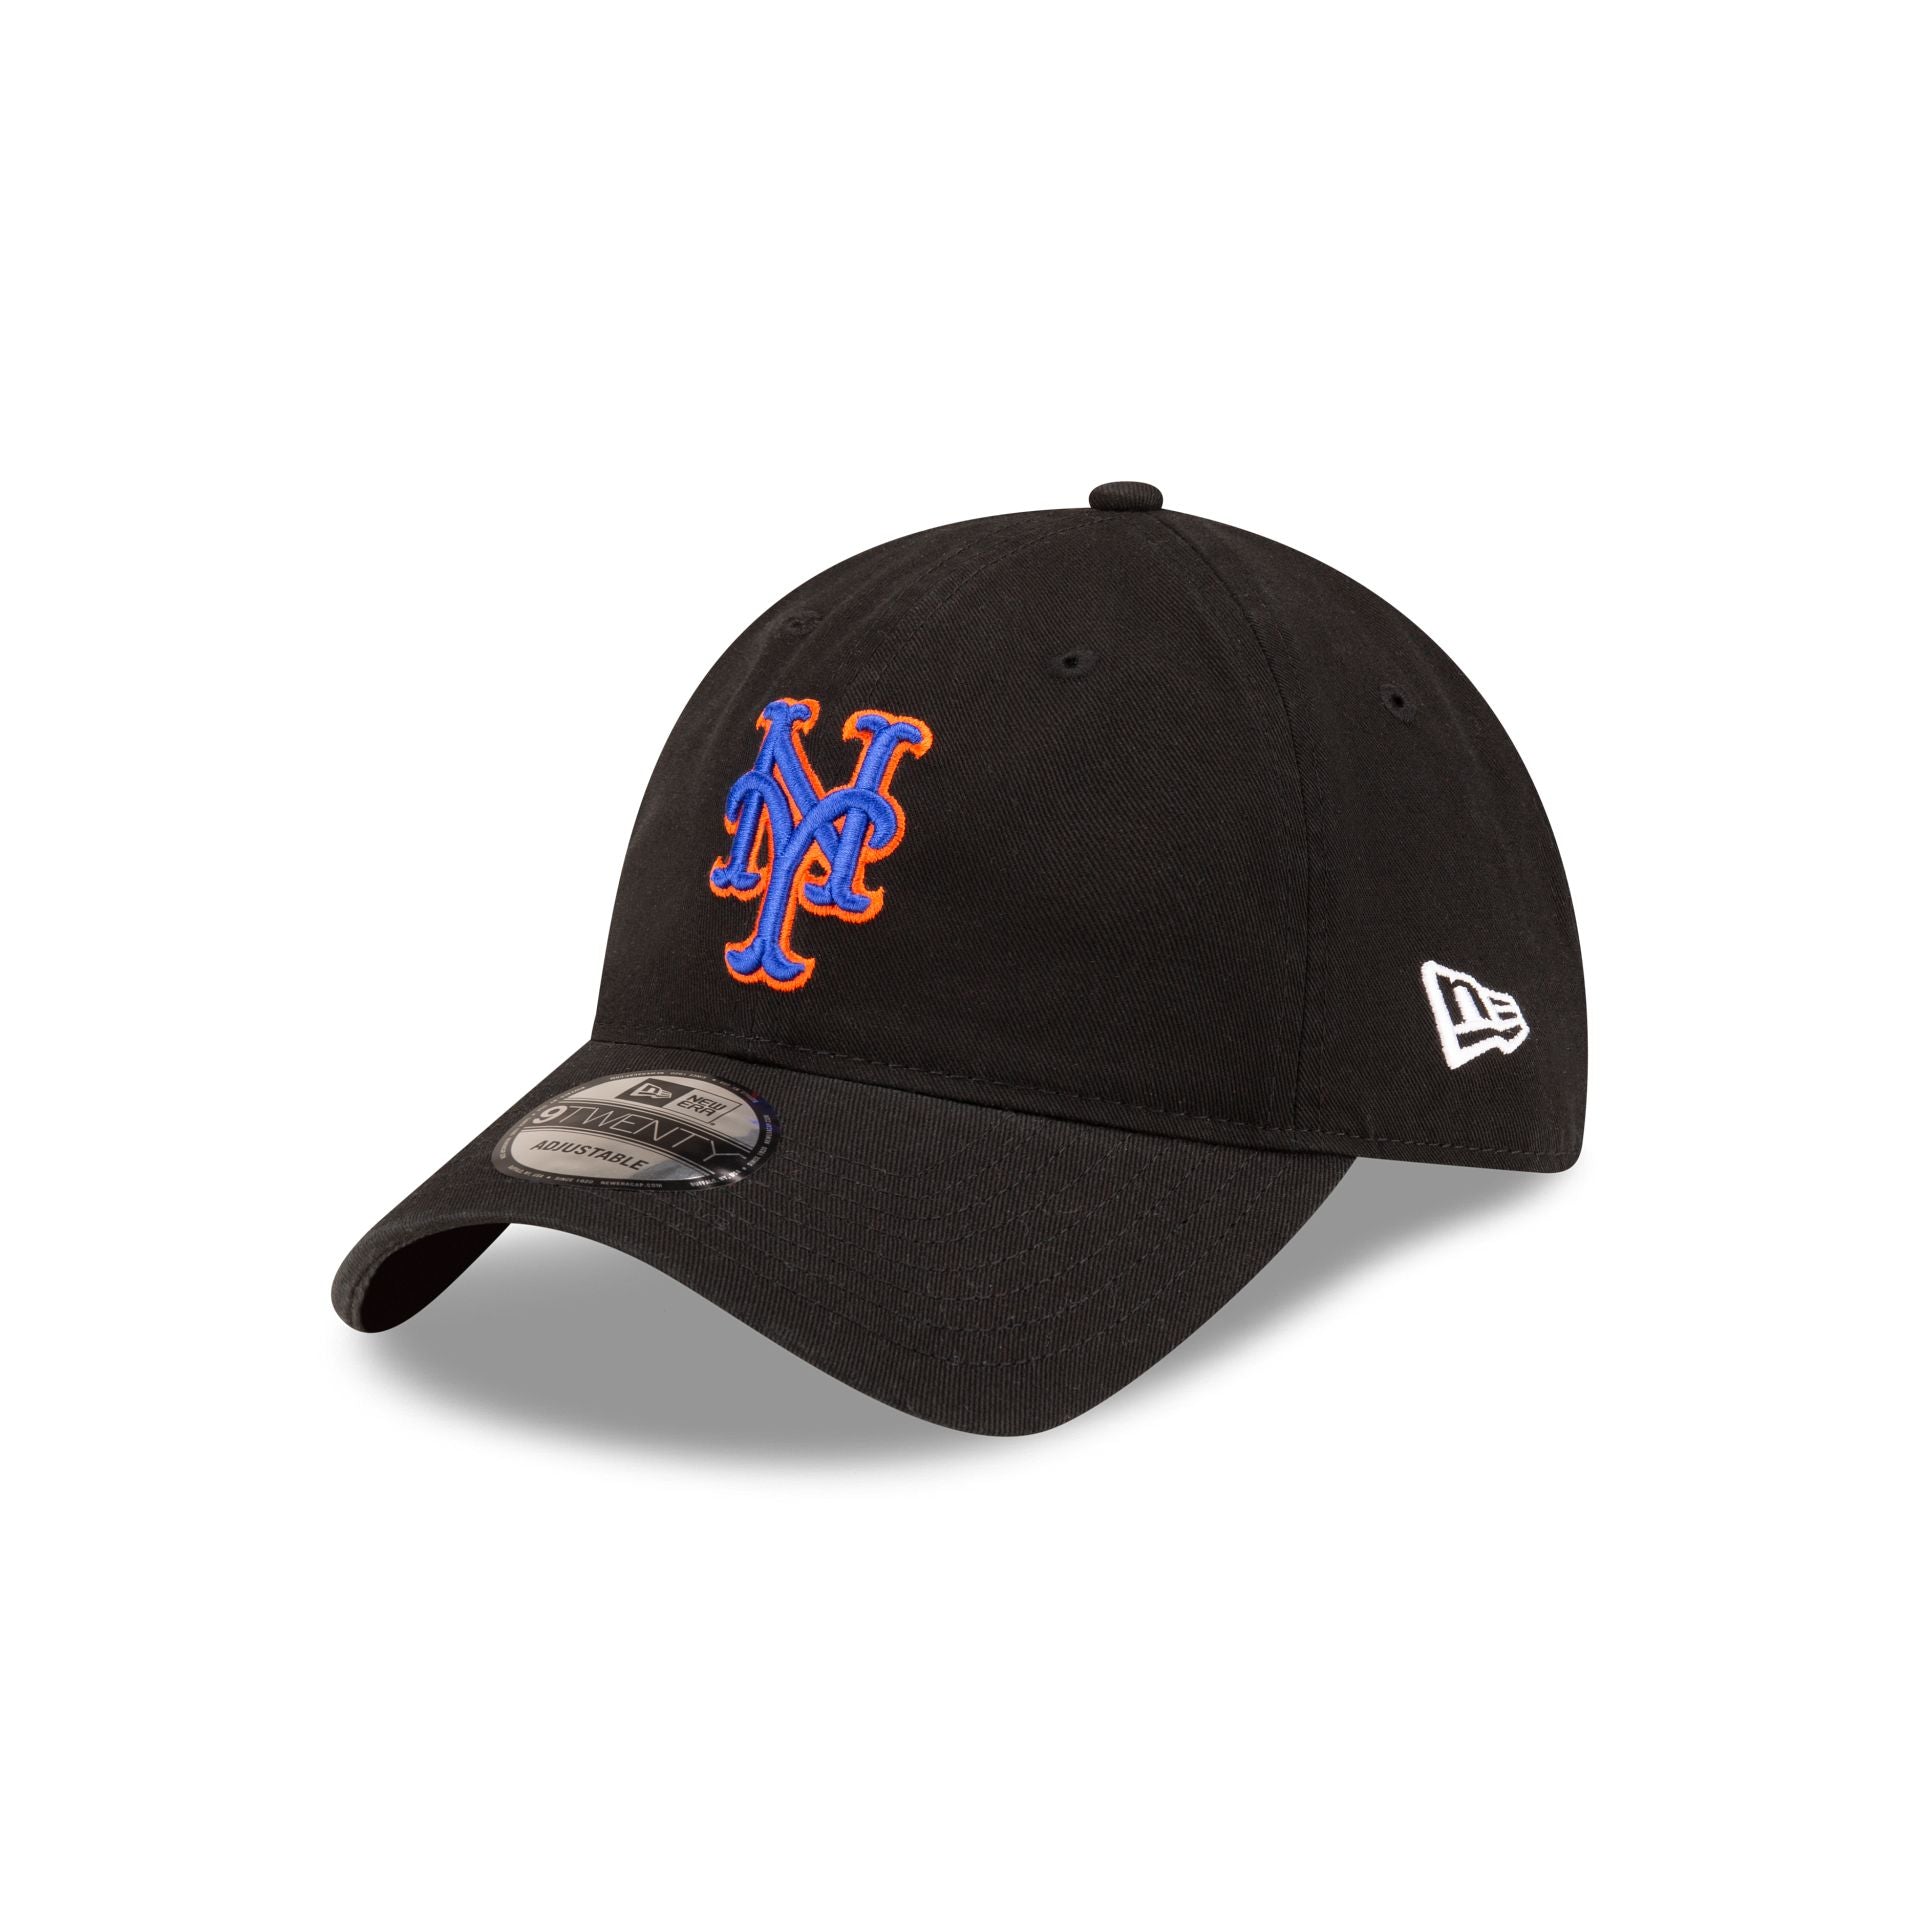  New Era MLB Core Classic 9TWENTY Adjustable Hat Cap